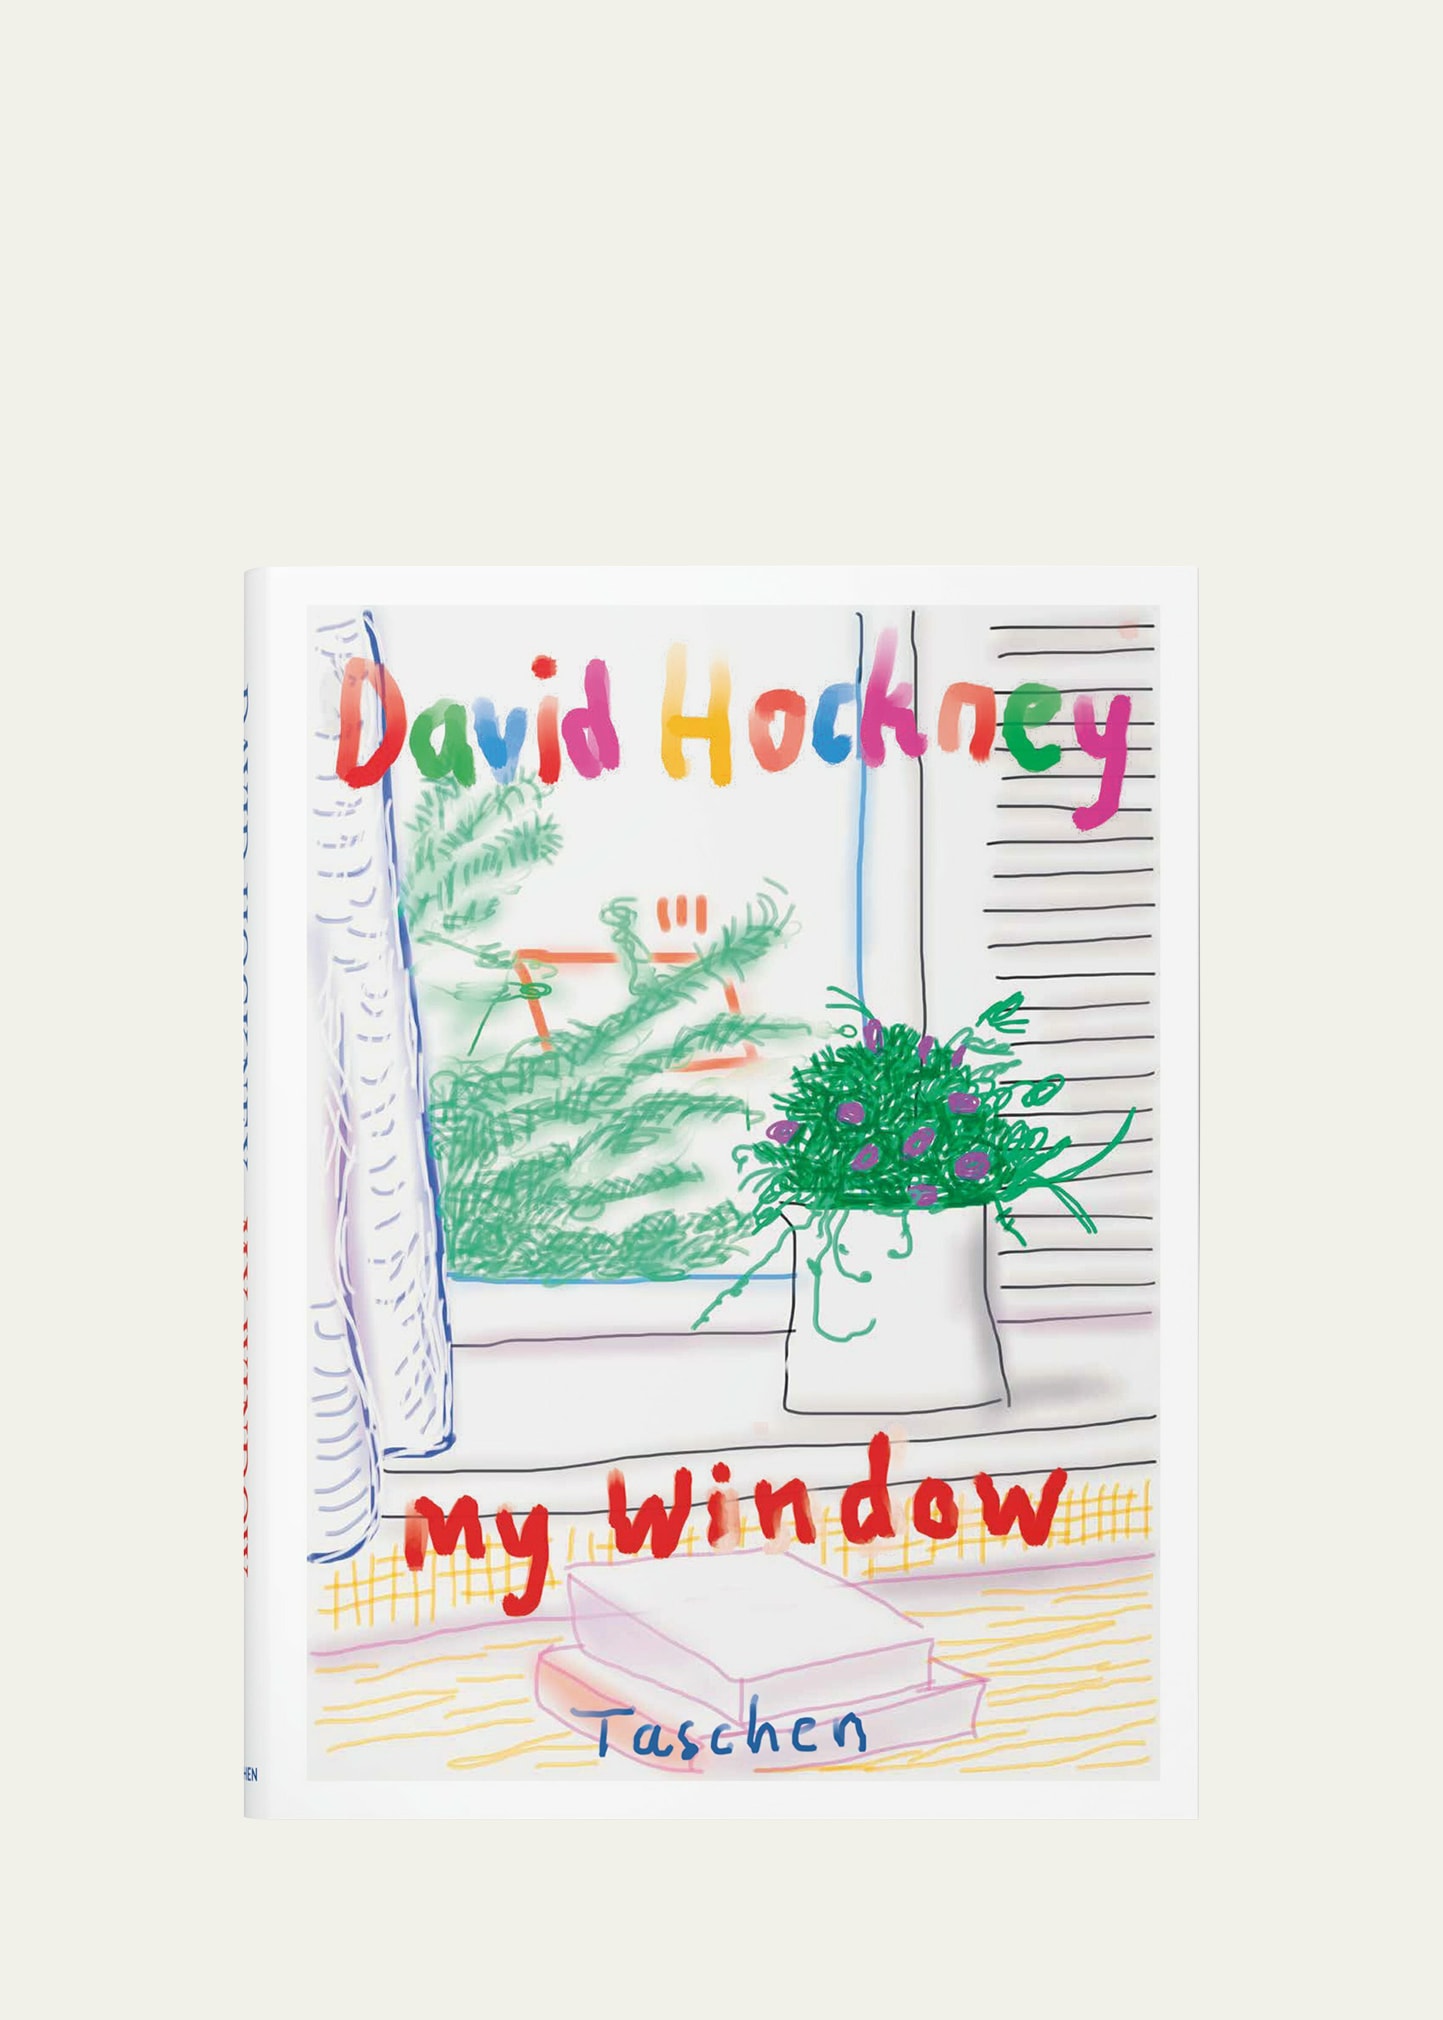 Taschen My Window Book By David Hockney